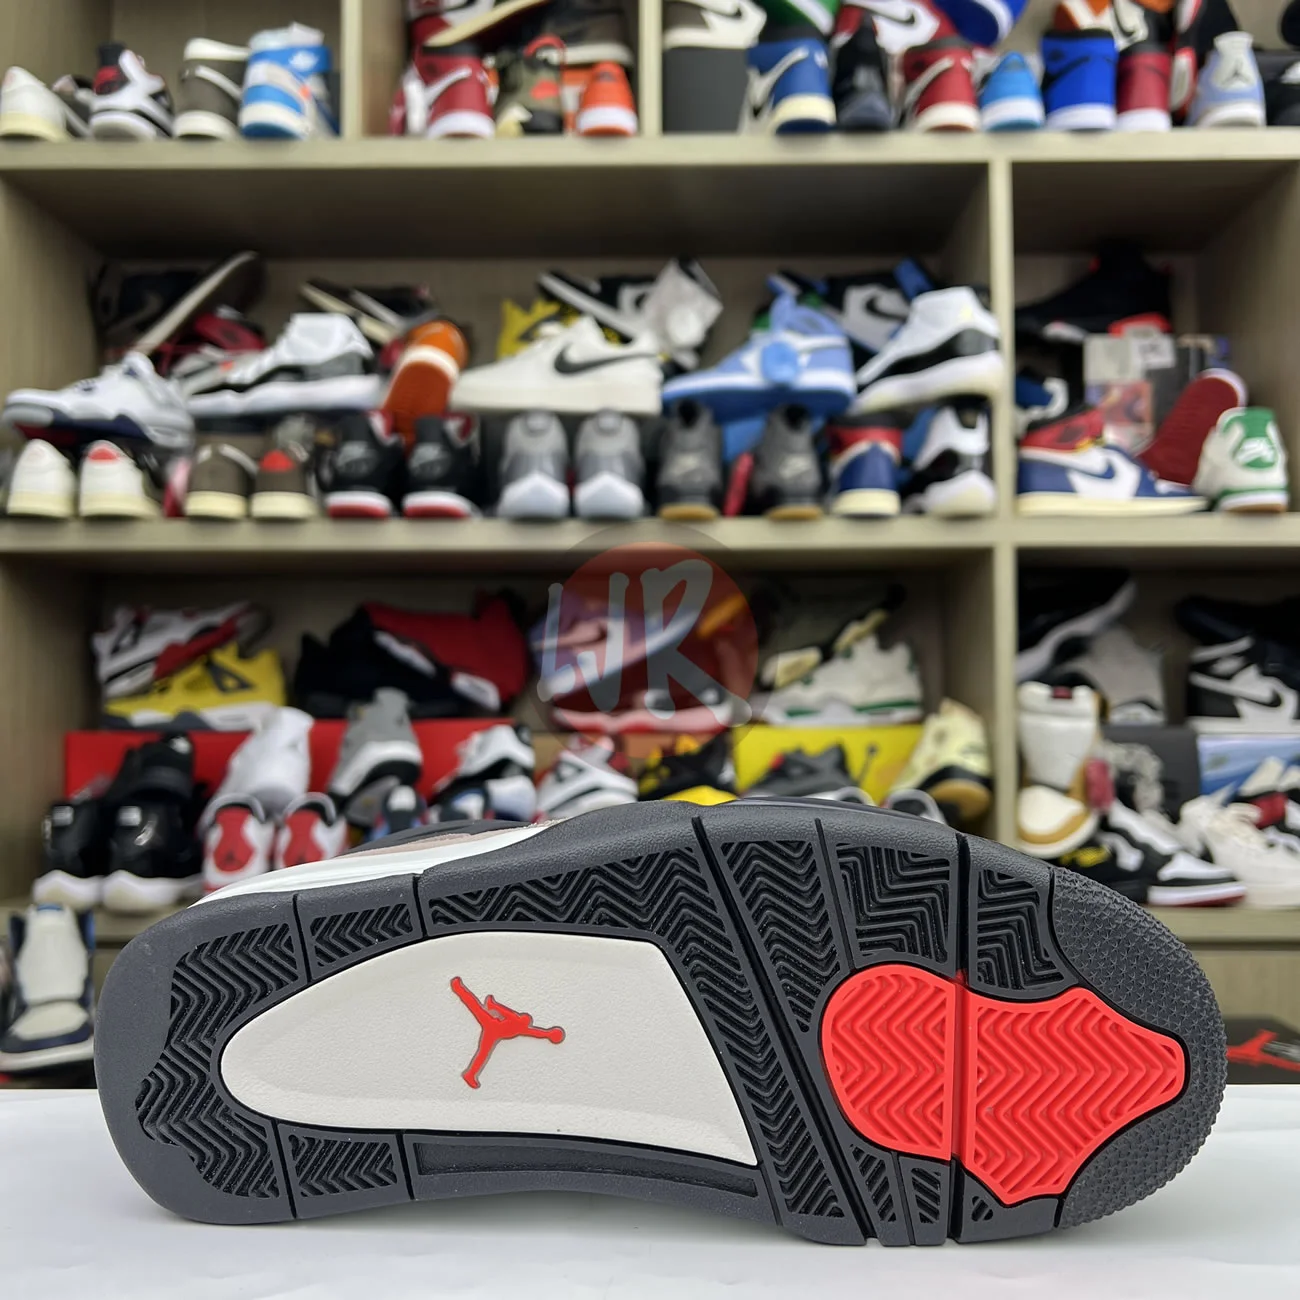 Air Jordan 4 Retro Taupe Haze Db0732 200 Ljr Sneakers (21) - bc-ljr.com